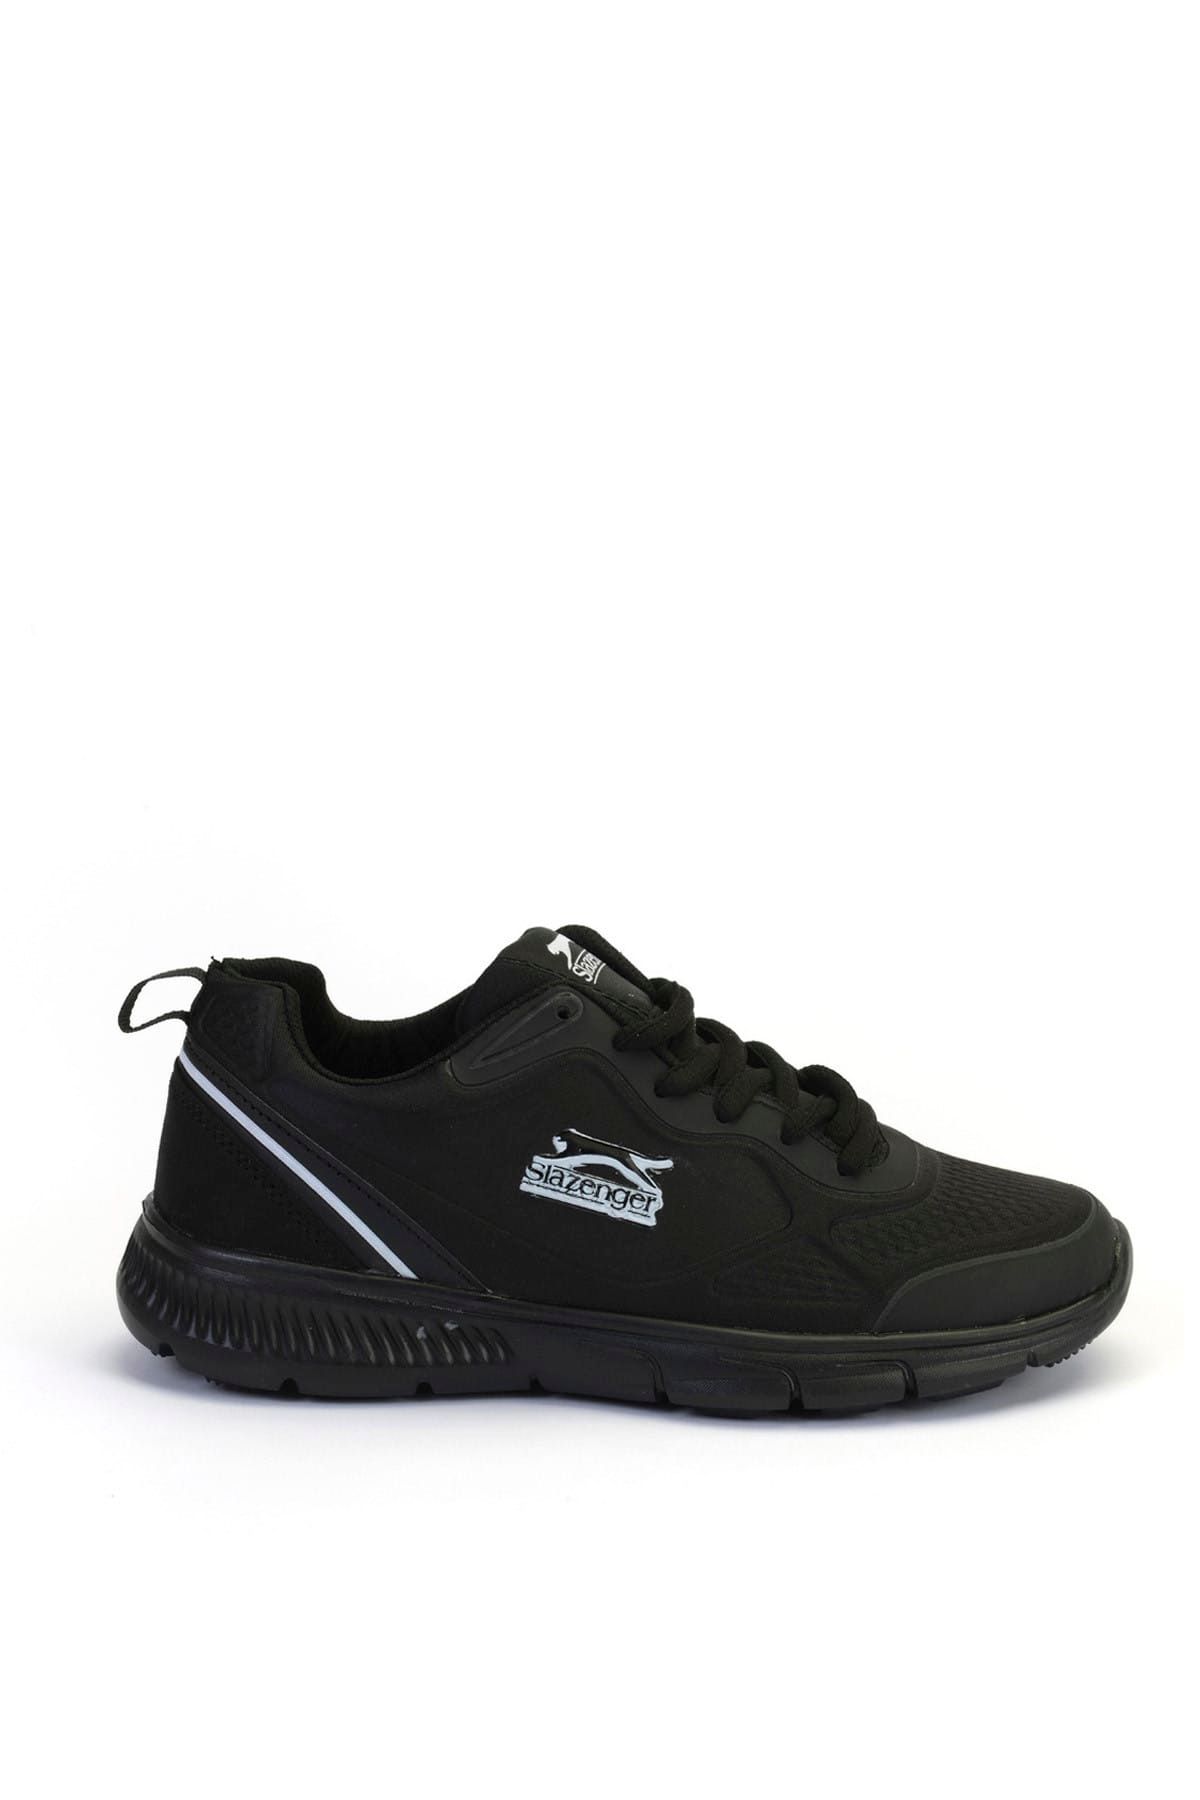 Slazenger Dorny Sneaker Kadın Ayakkabı Siyah